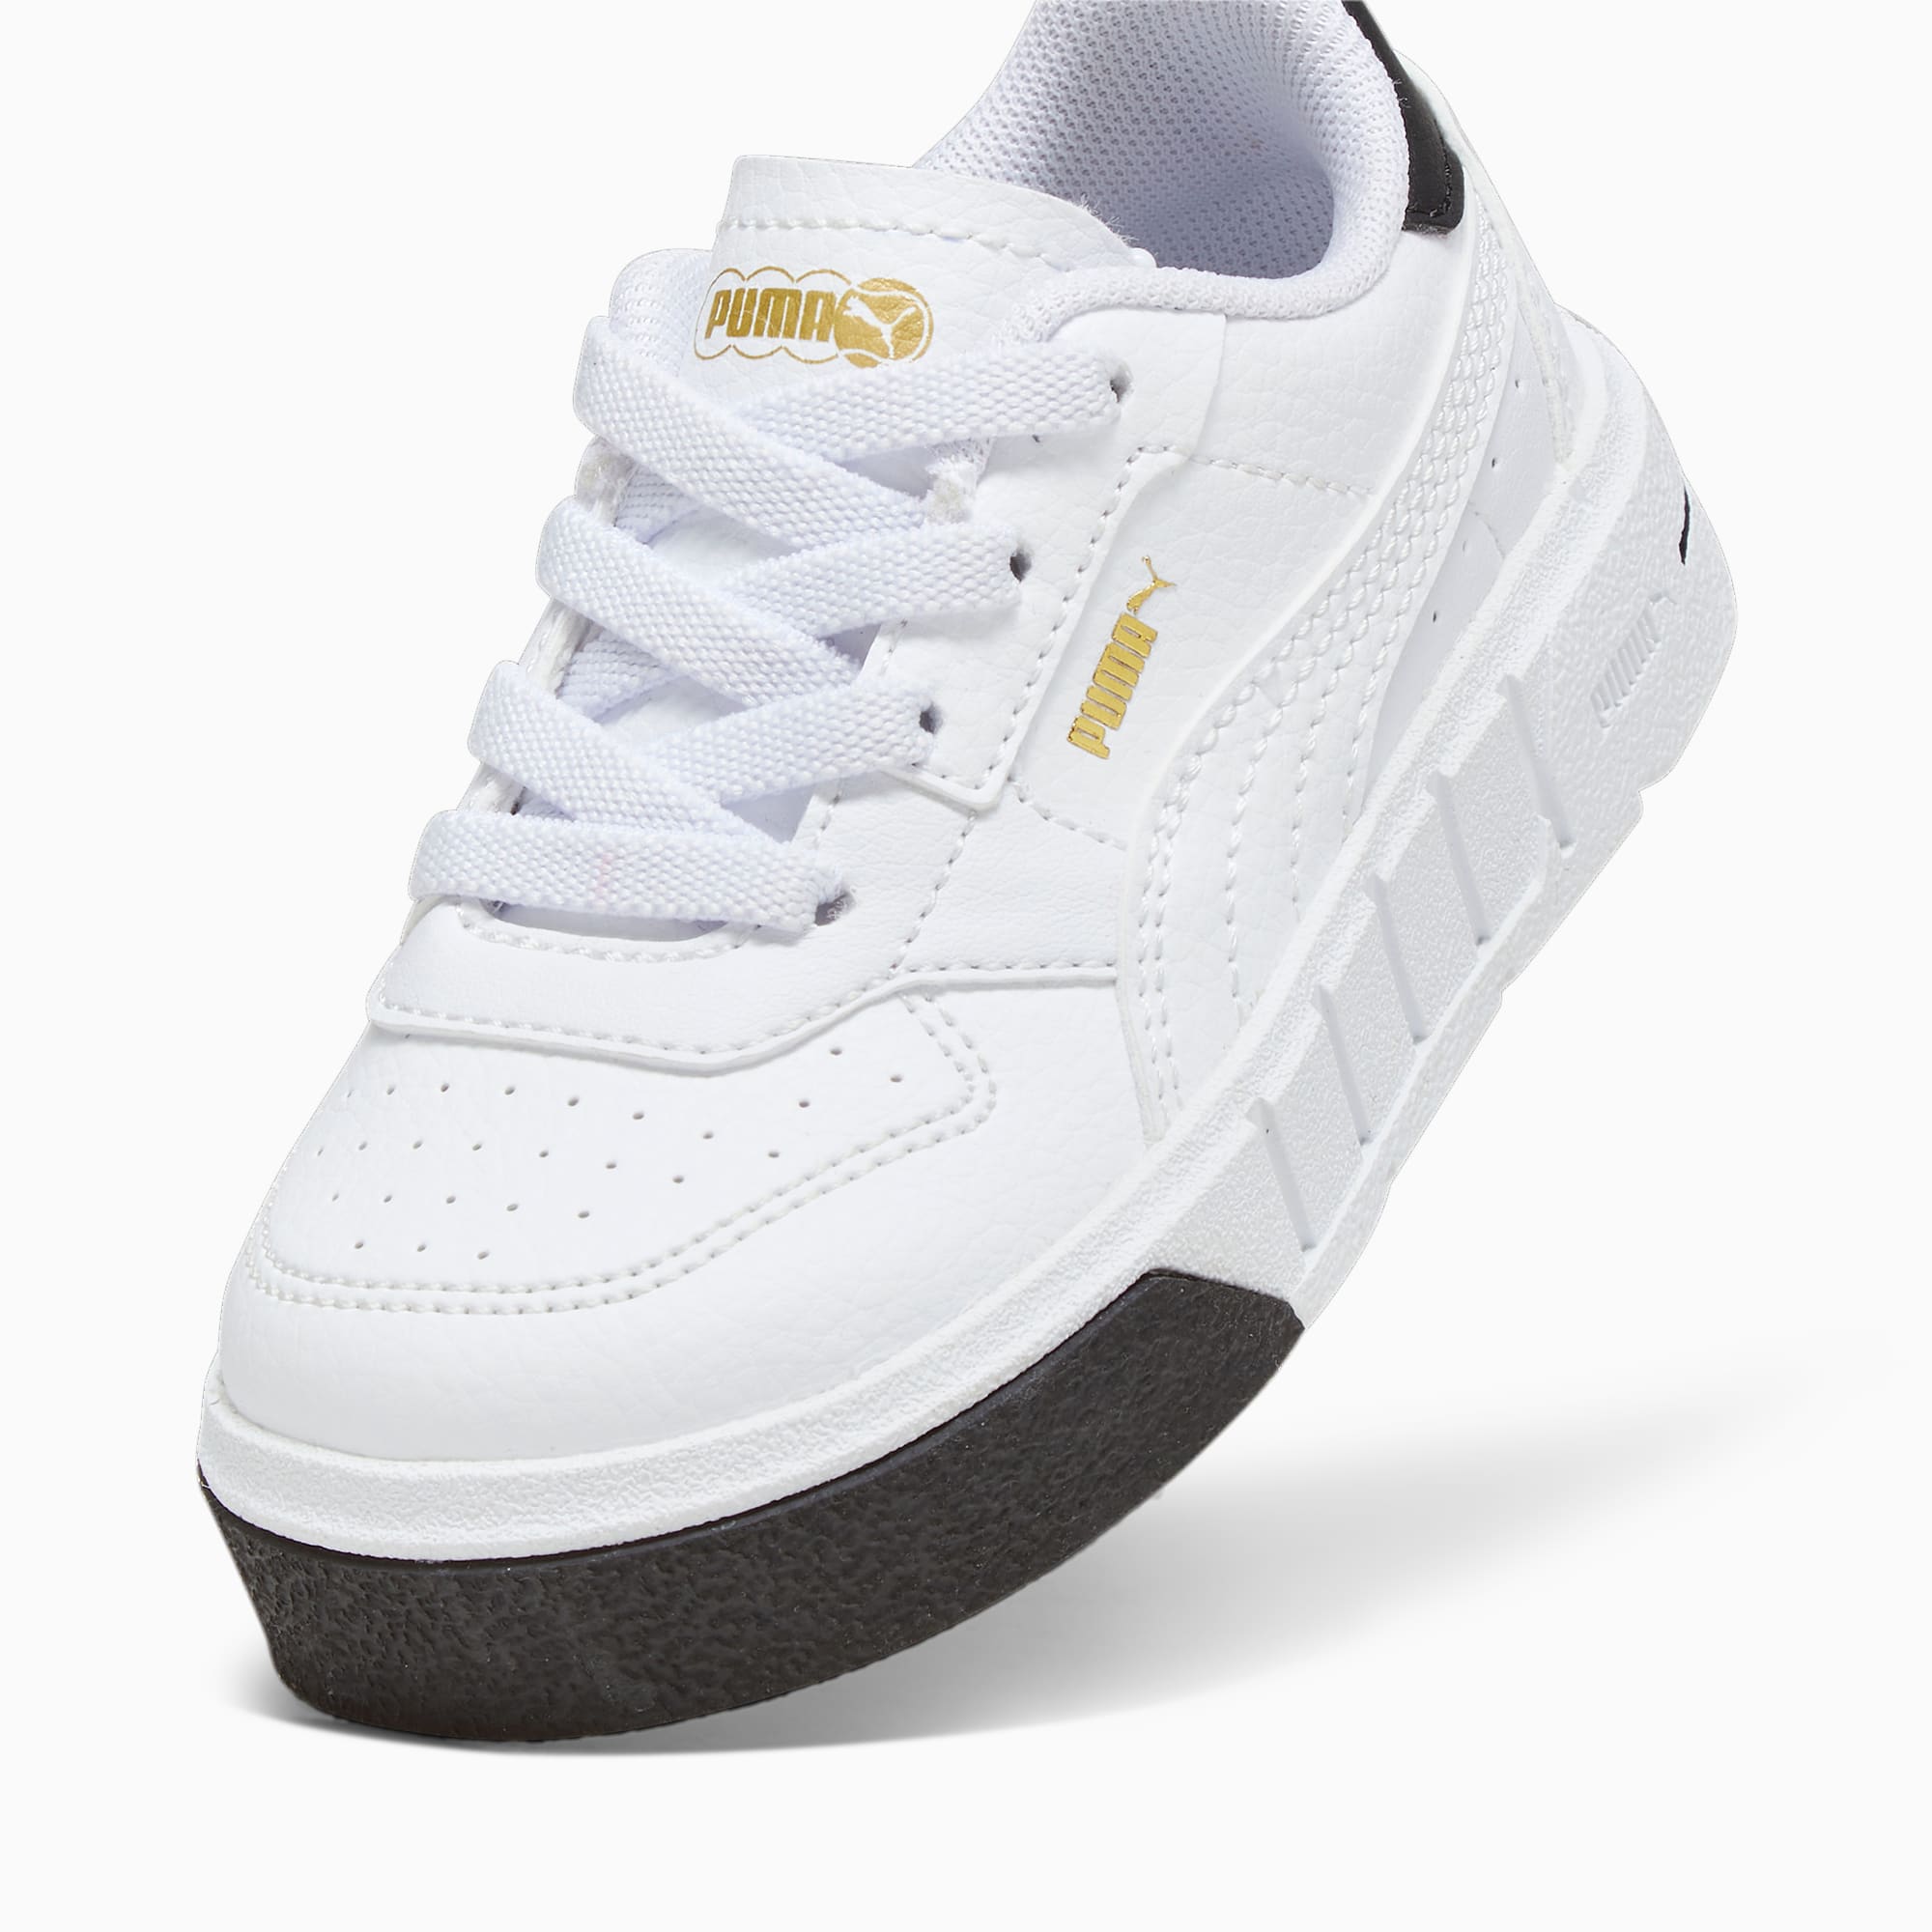 PUMA Cali Court Leder-Sneakers Babys Schuhe Für Kinder, Weiß/Schwarz, Größe: 22, Schuhe